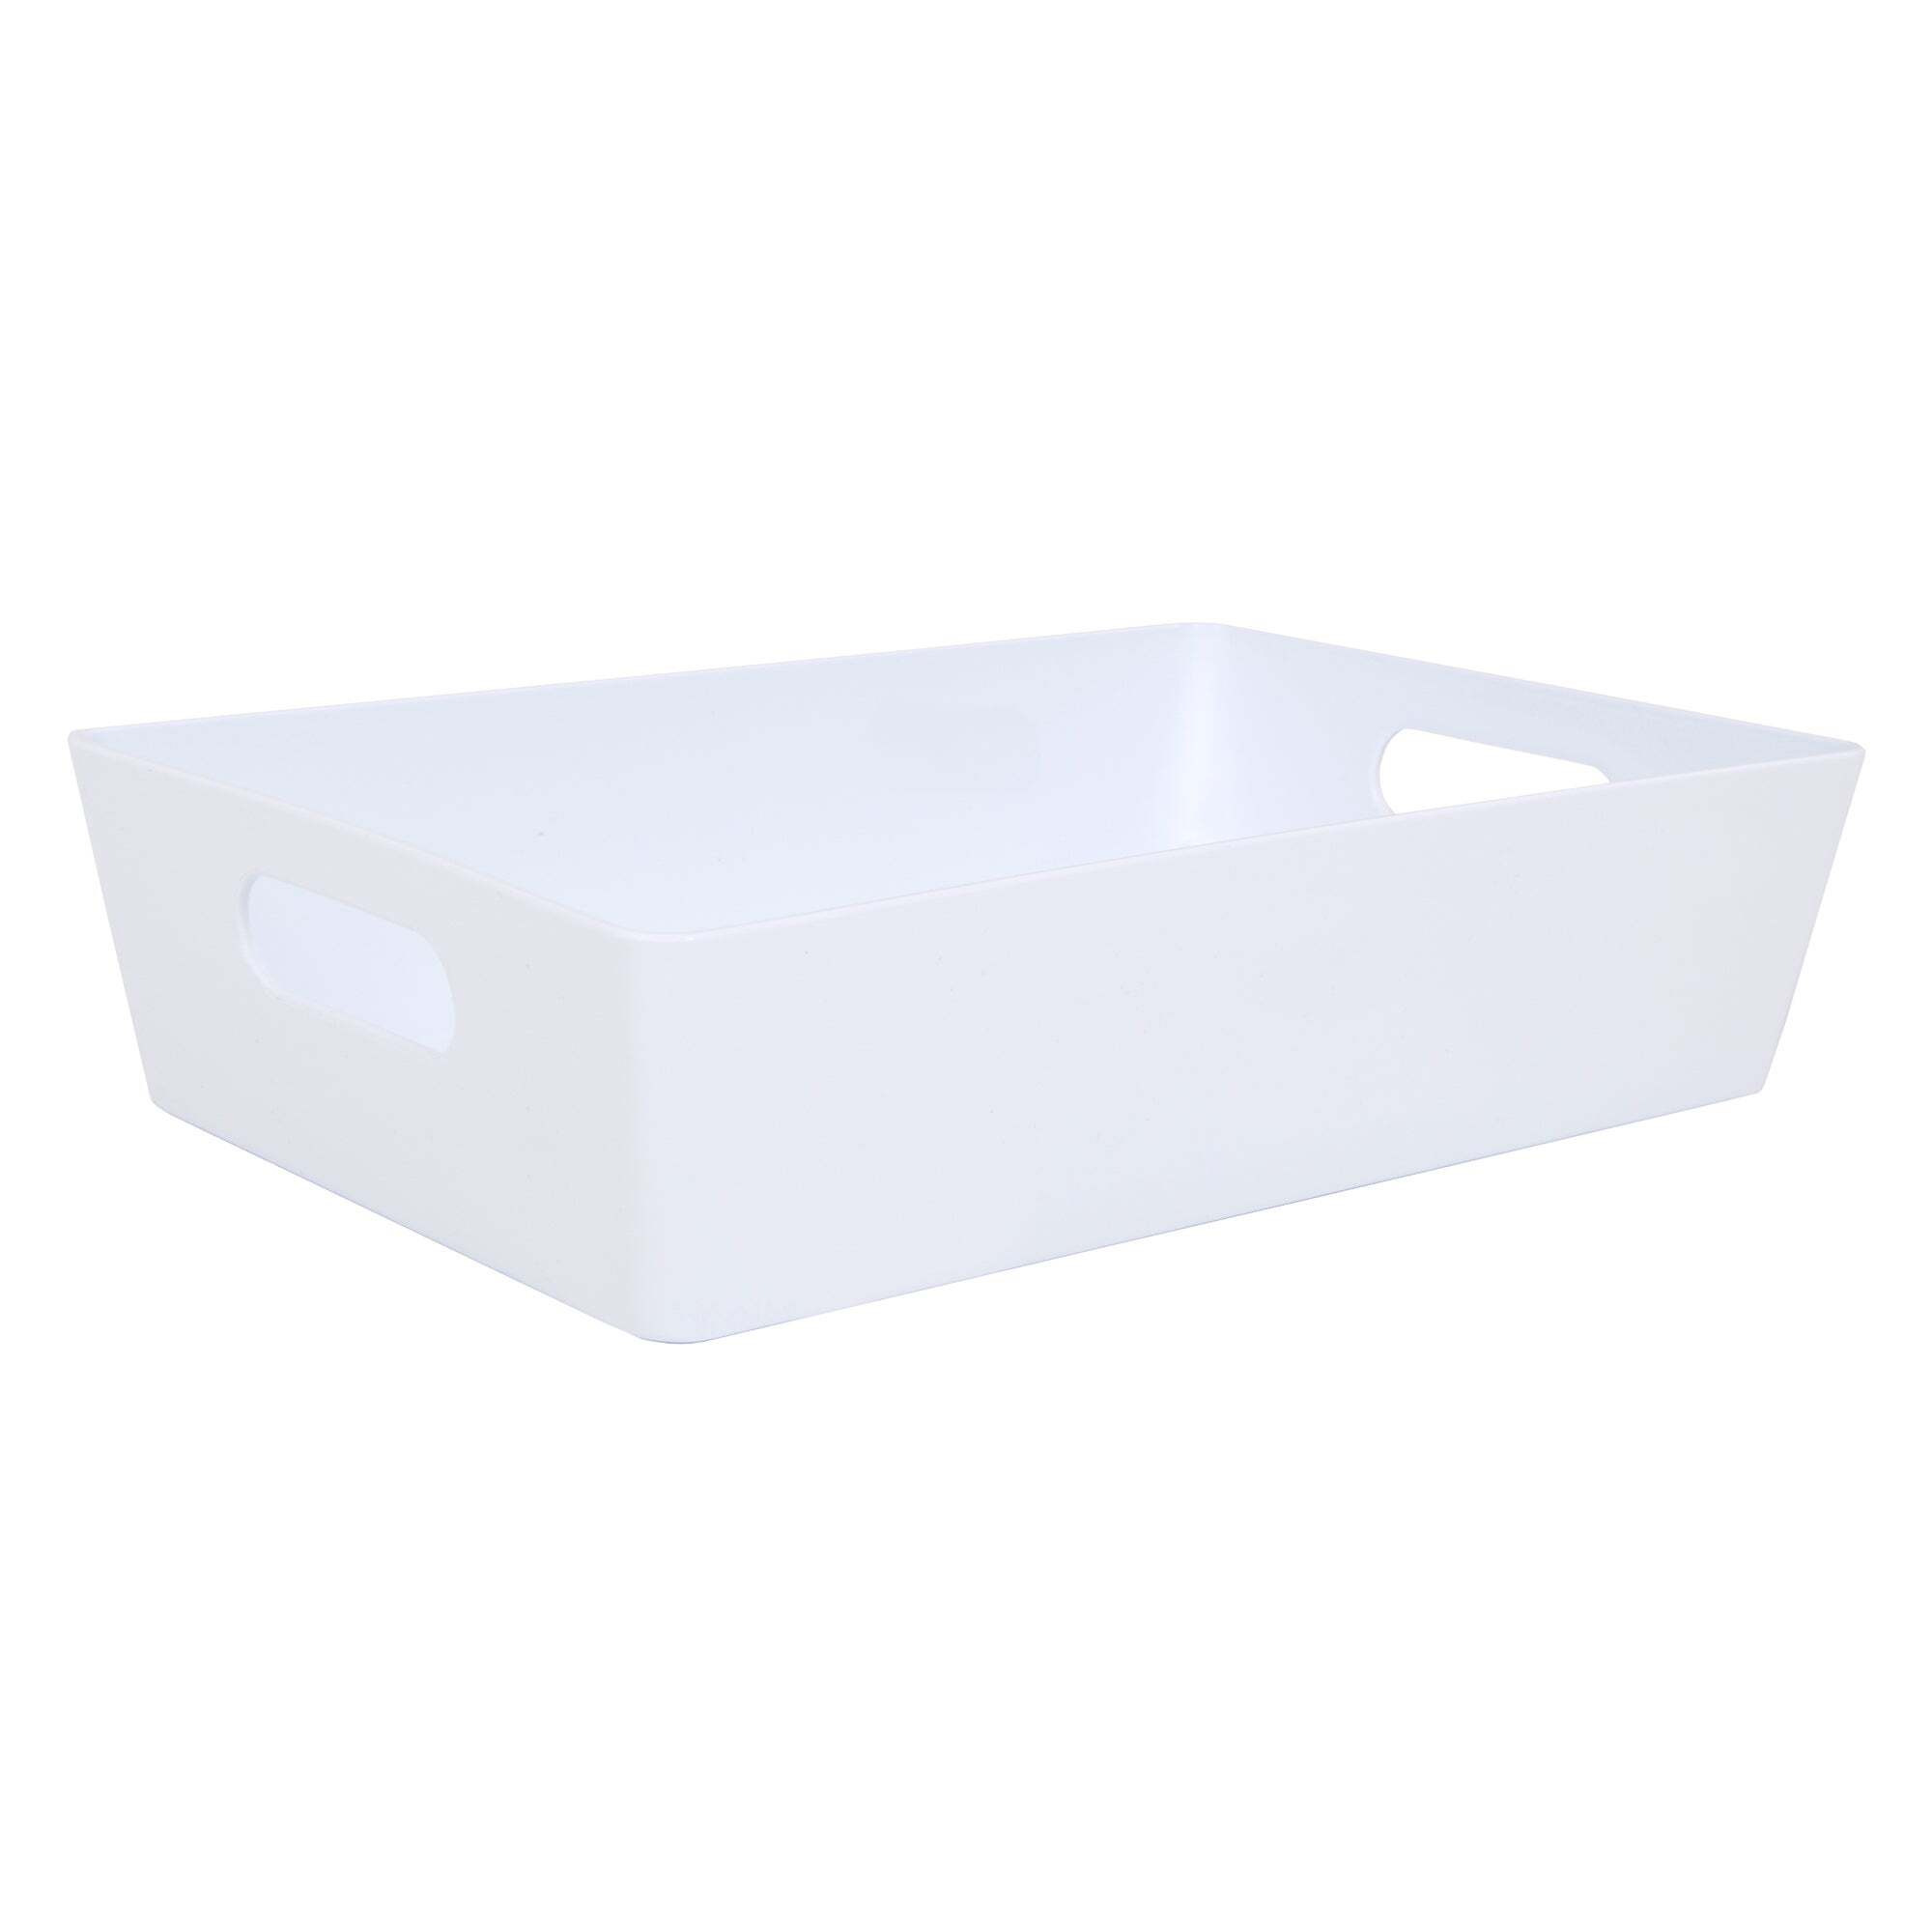 Wham Studio Plastic Storage Basket 4.01 White